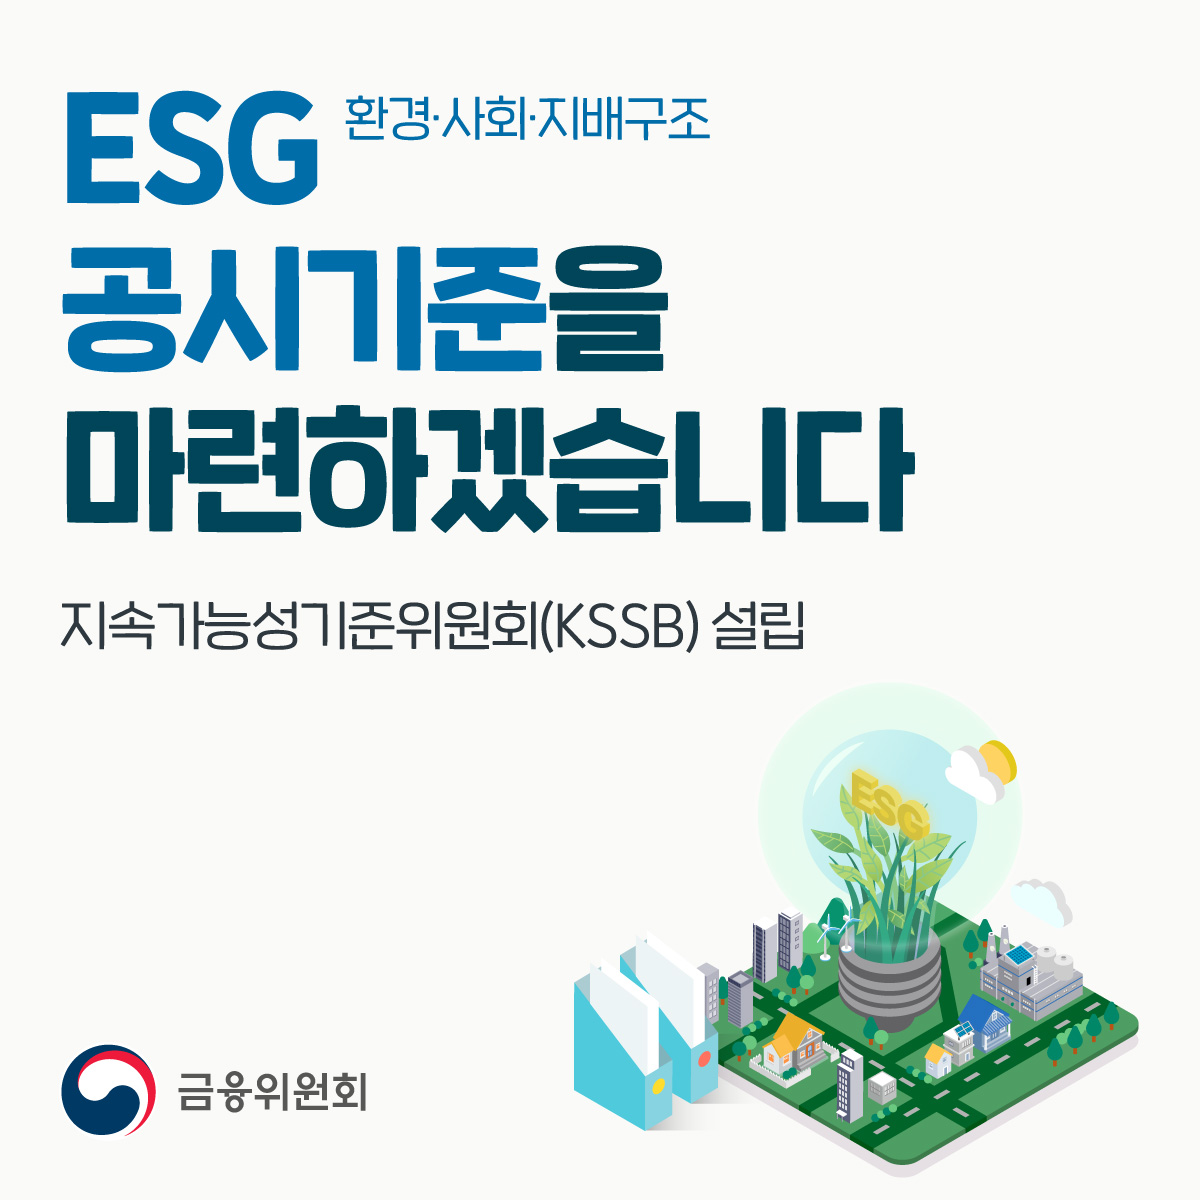 ESG 환경·사회·지배구조 공시기준을 마련하겠습니다. 지속가능성기준위원회(KSSB) 설립